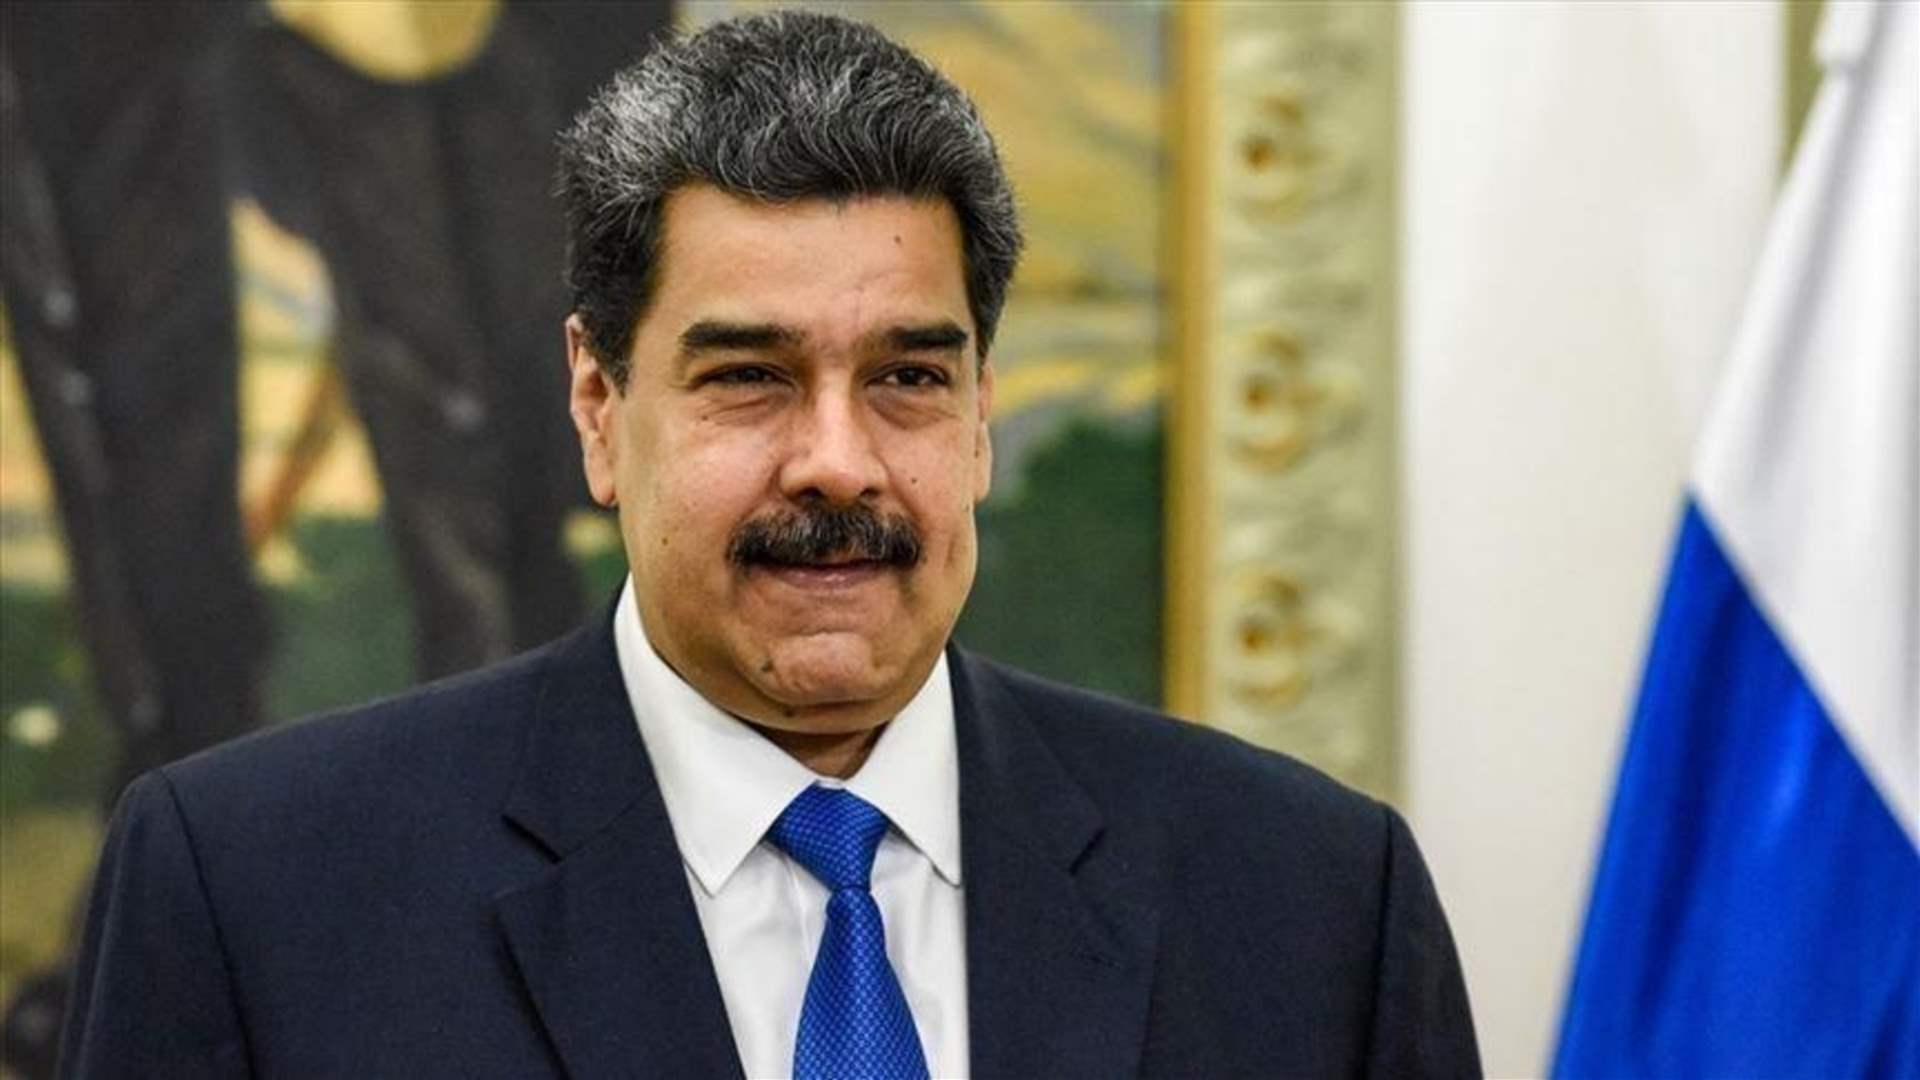 مادورو يندد بمحاولة انقلاب إثر إعلان فوزه رسميا بالرئاسة